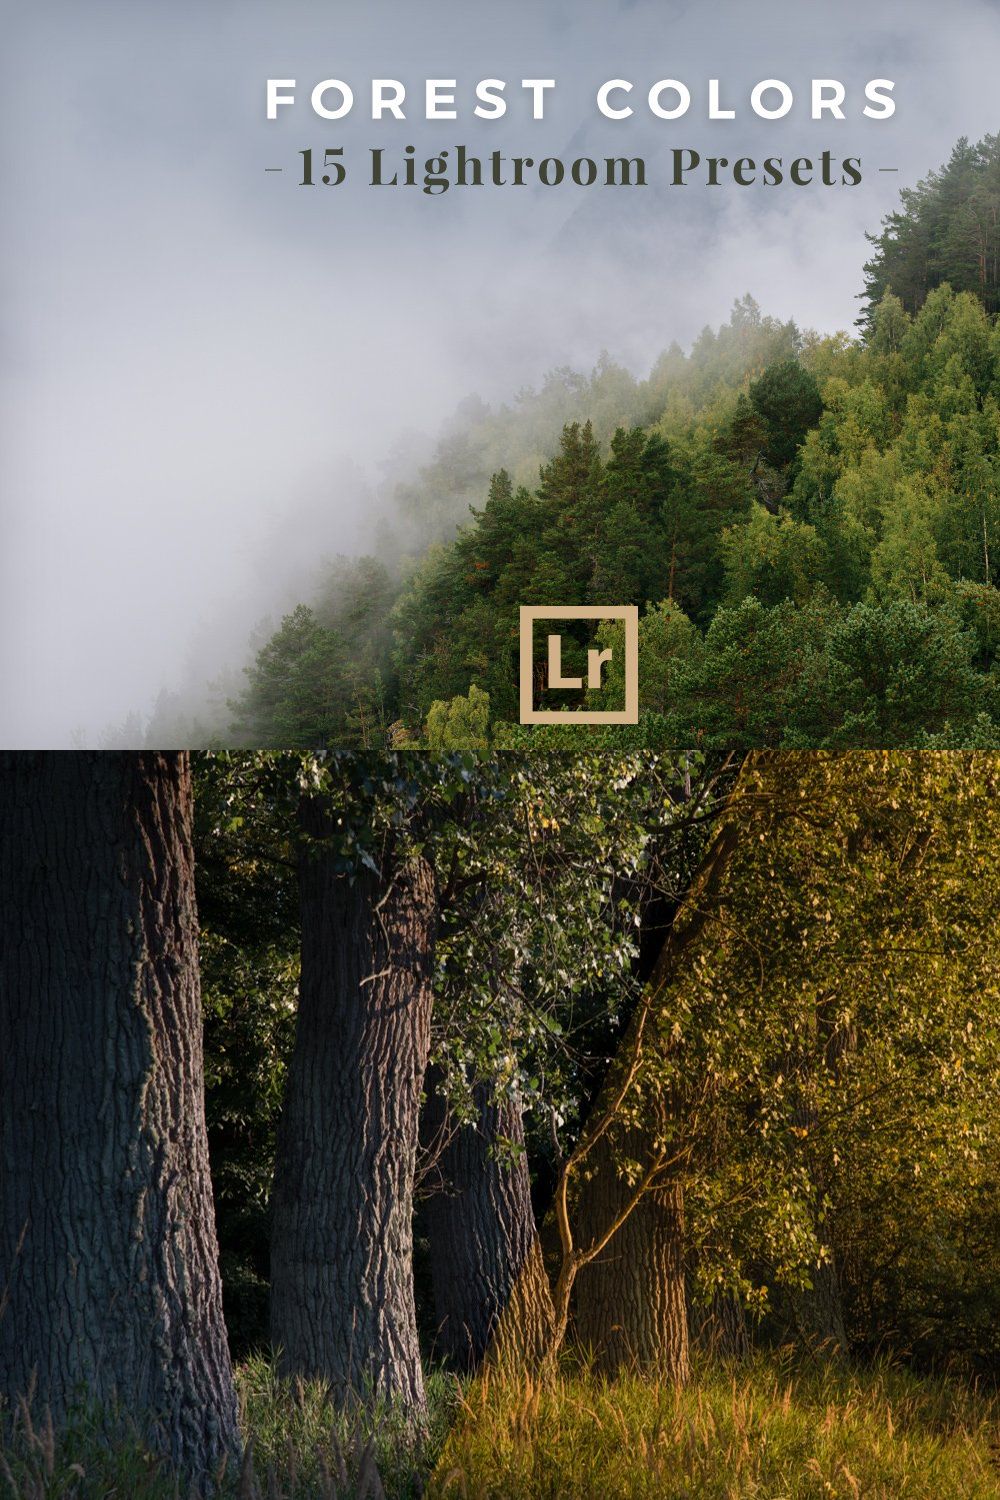 Lightroom Presets Forest Landscapes pinterest preview image.